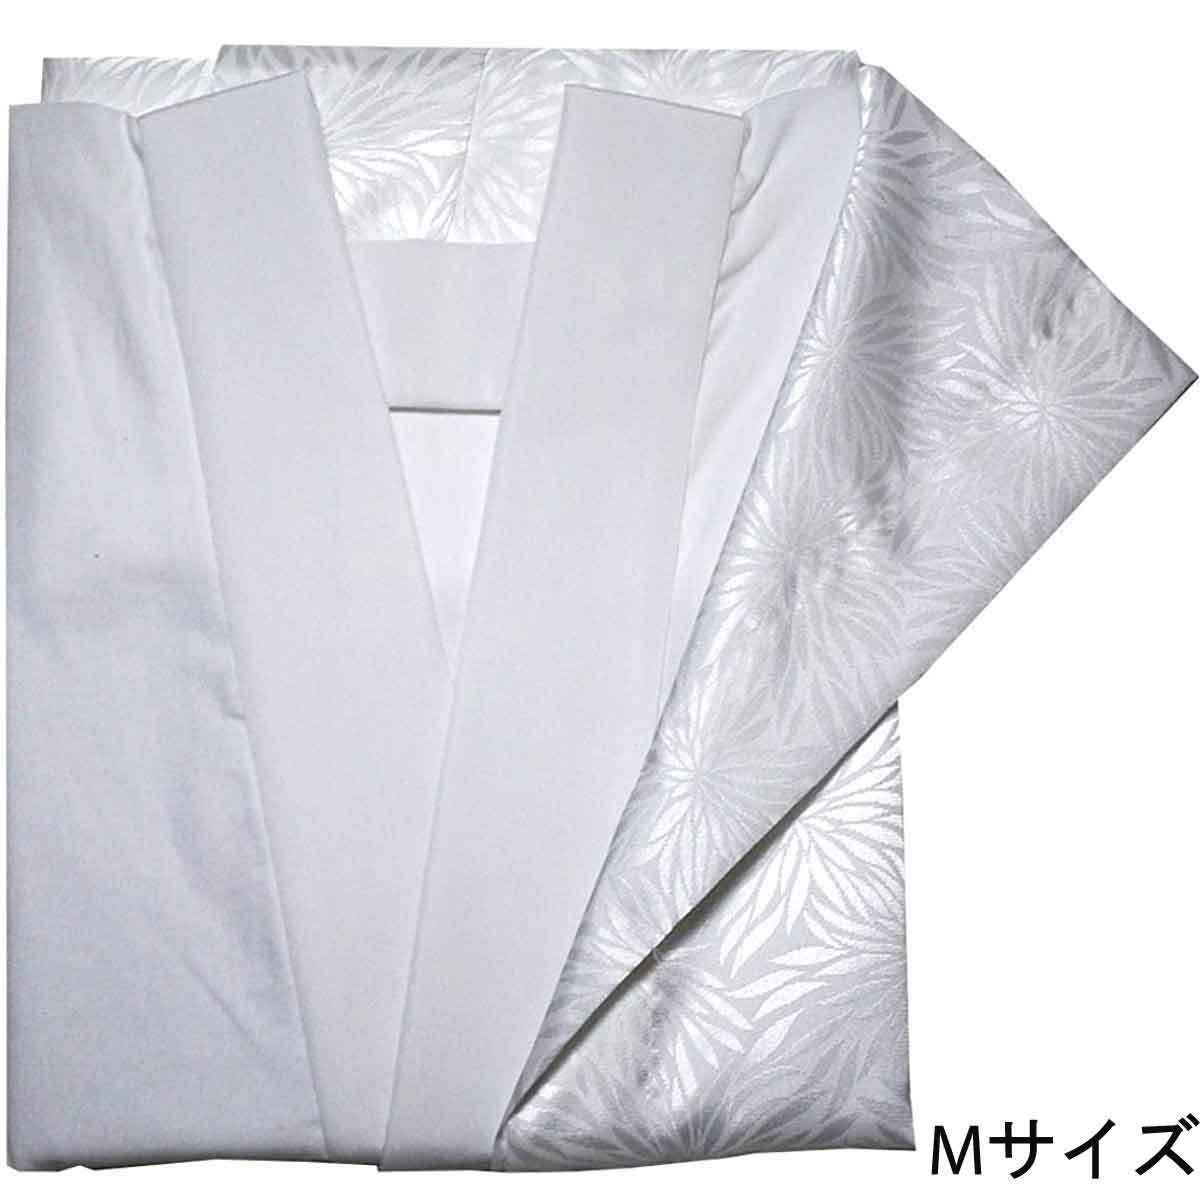 日本製 胴抜き長襦袢 仕立て上がり 半衿付き 抜衿布、腰紐付 えもん抜き Mサイズ